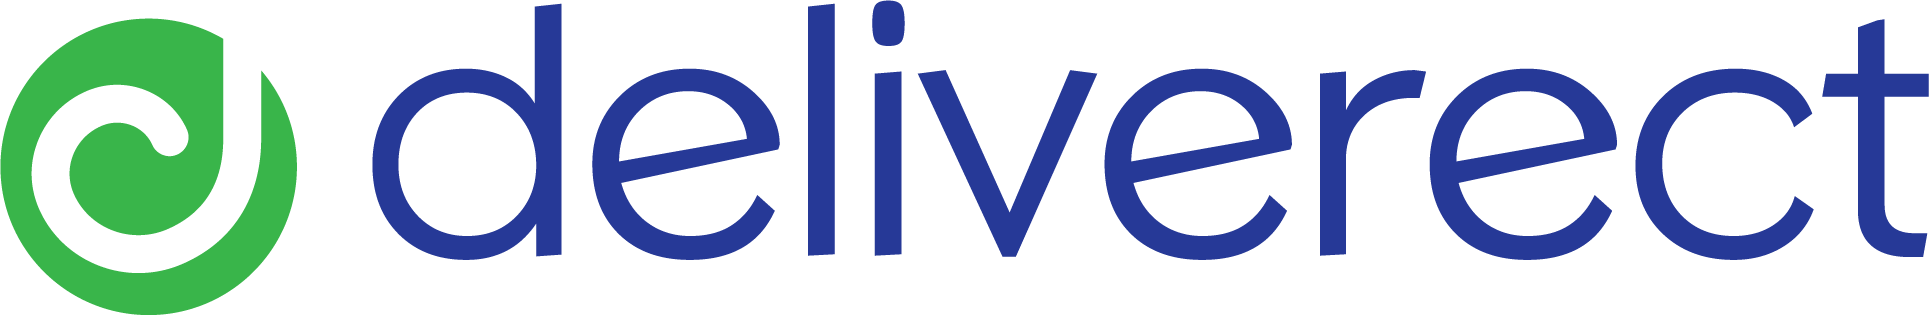 Deliverect logo